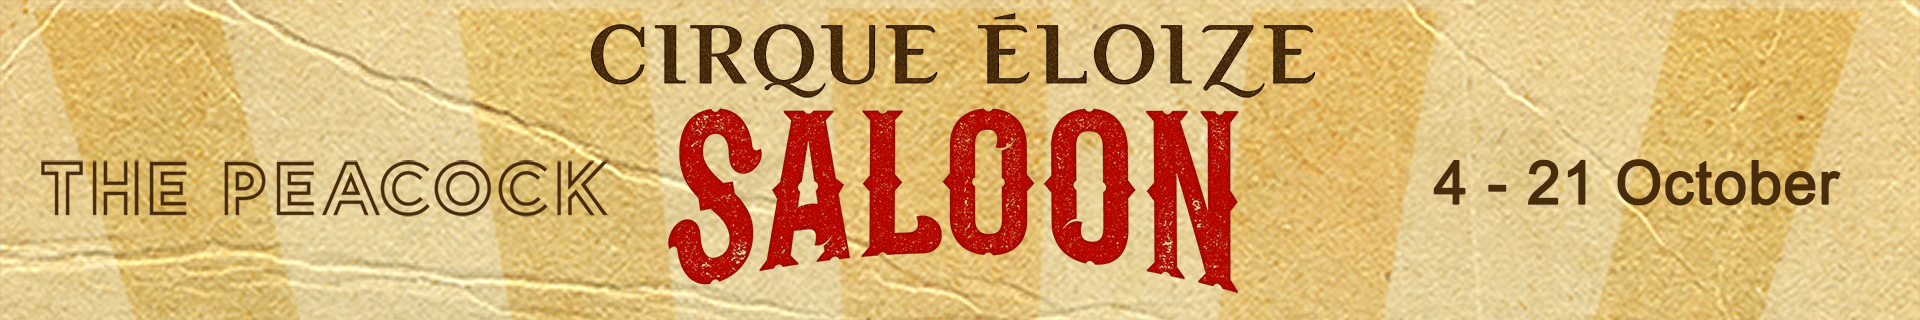 Cirque Éloize — Saloon Header Image
